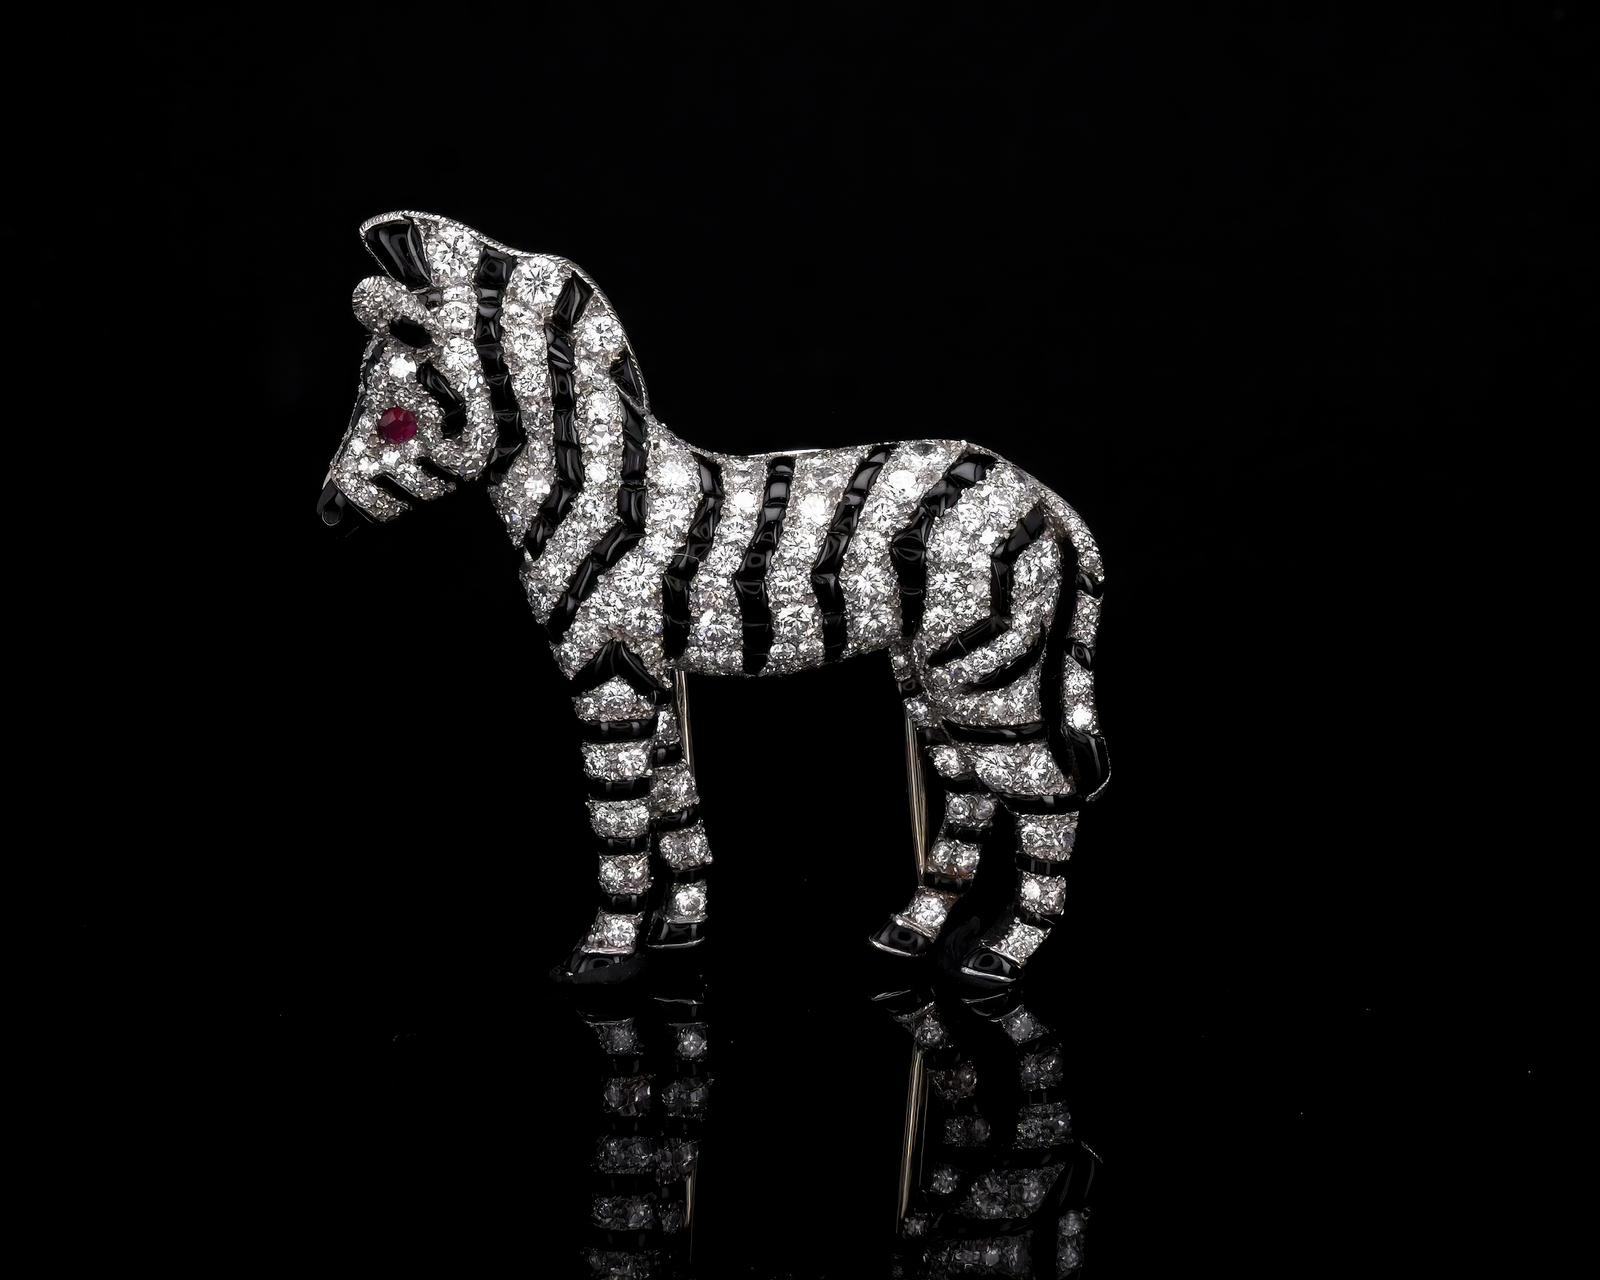 Zebra brooch from Zebrak